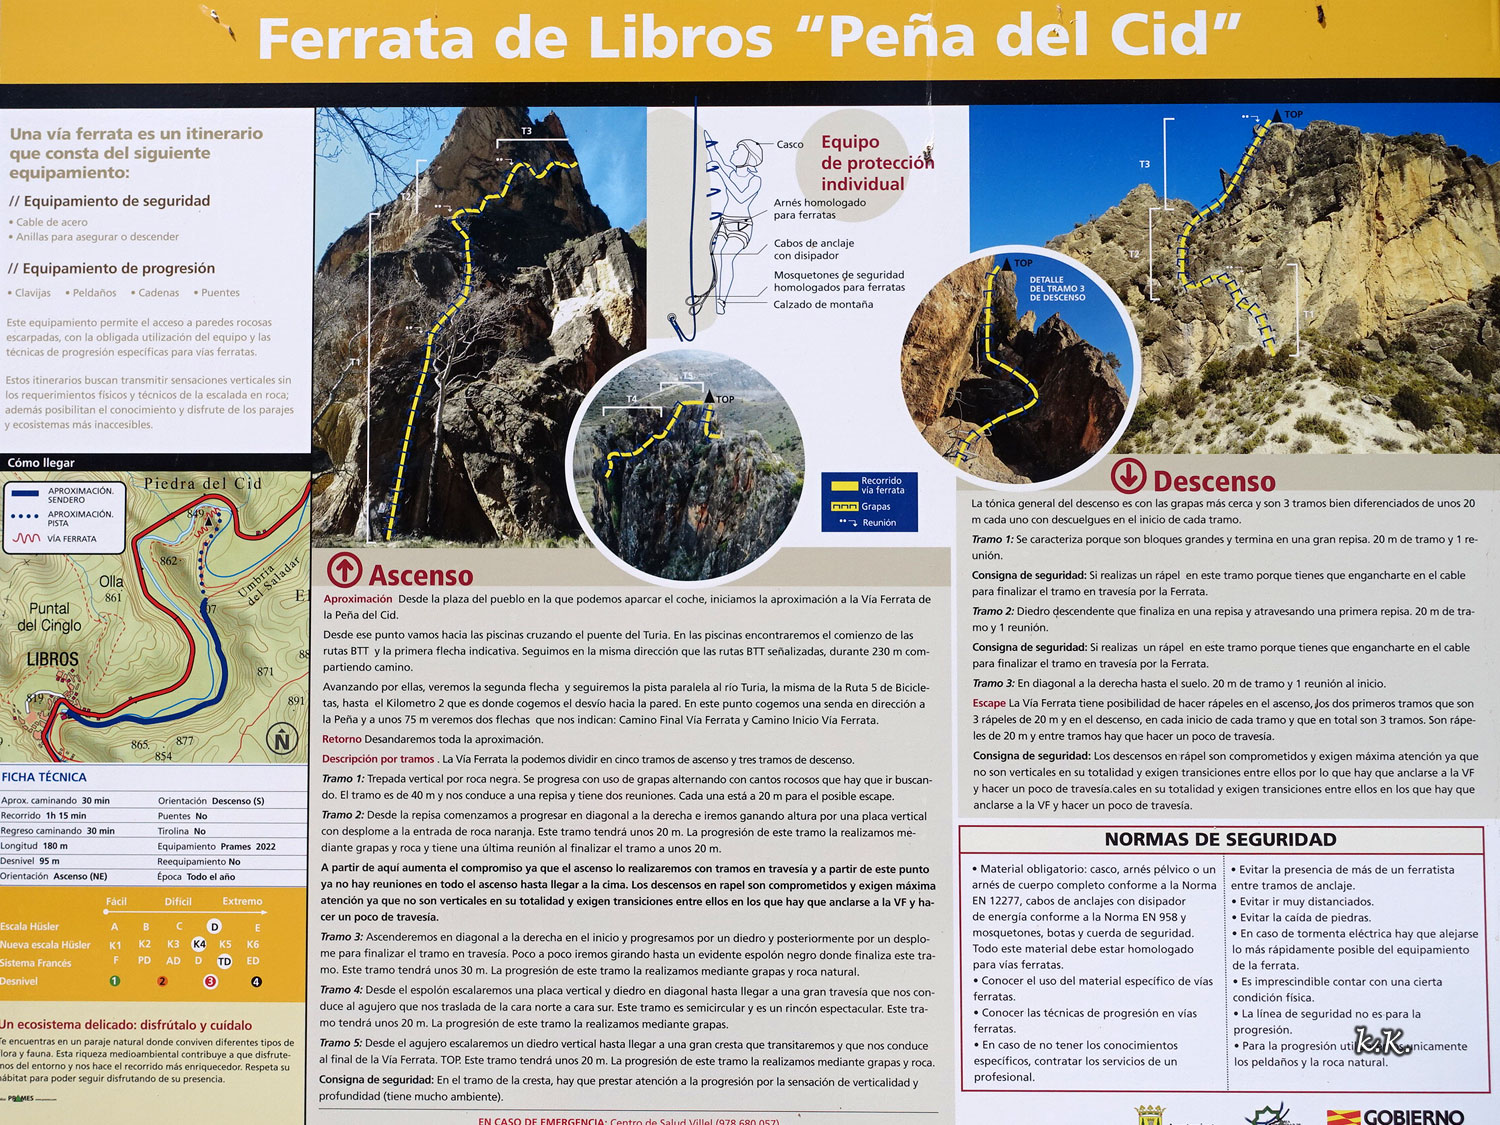 33A-Ferrata-Penna-del-Cid-Informacion